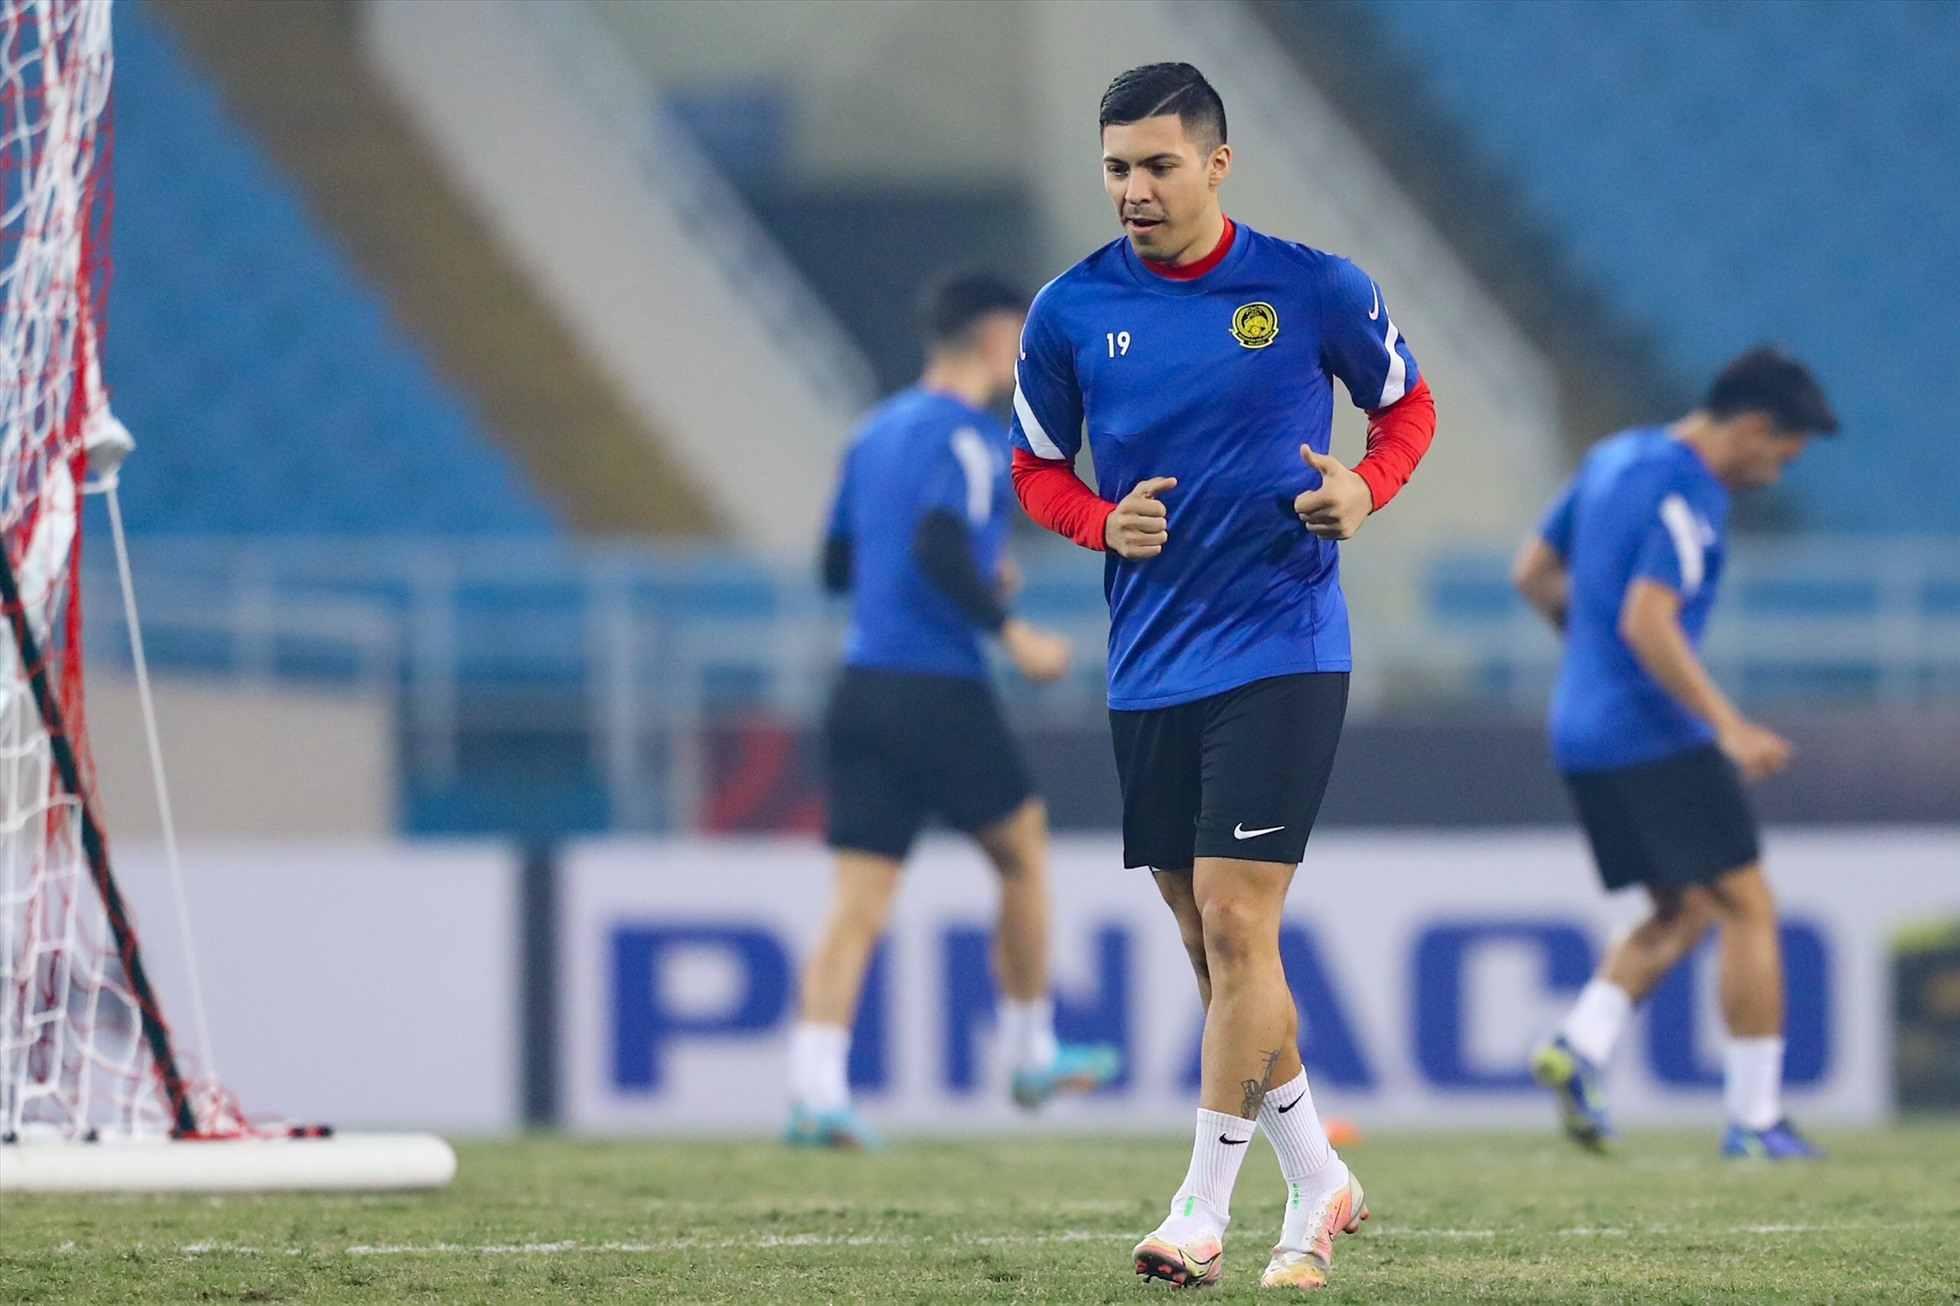 Nổi bật trong số cầu thủ ngoại là Sergio Aguero, cầu thủ đã ghi bàn trong chiến thắng 5-0 của Malaysia trước Lào.